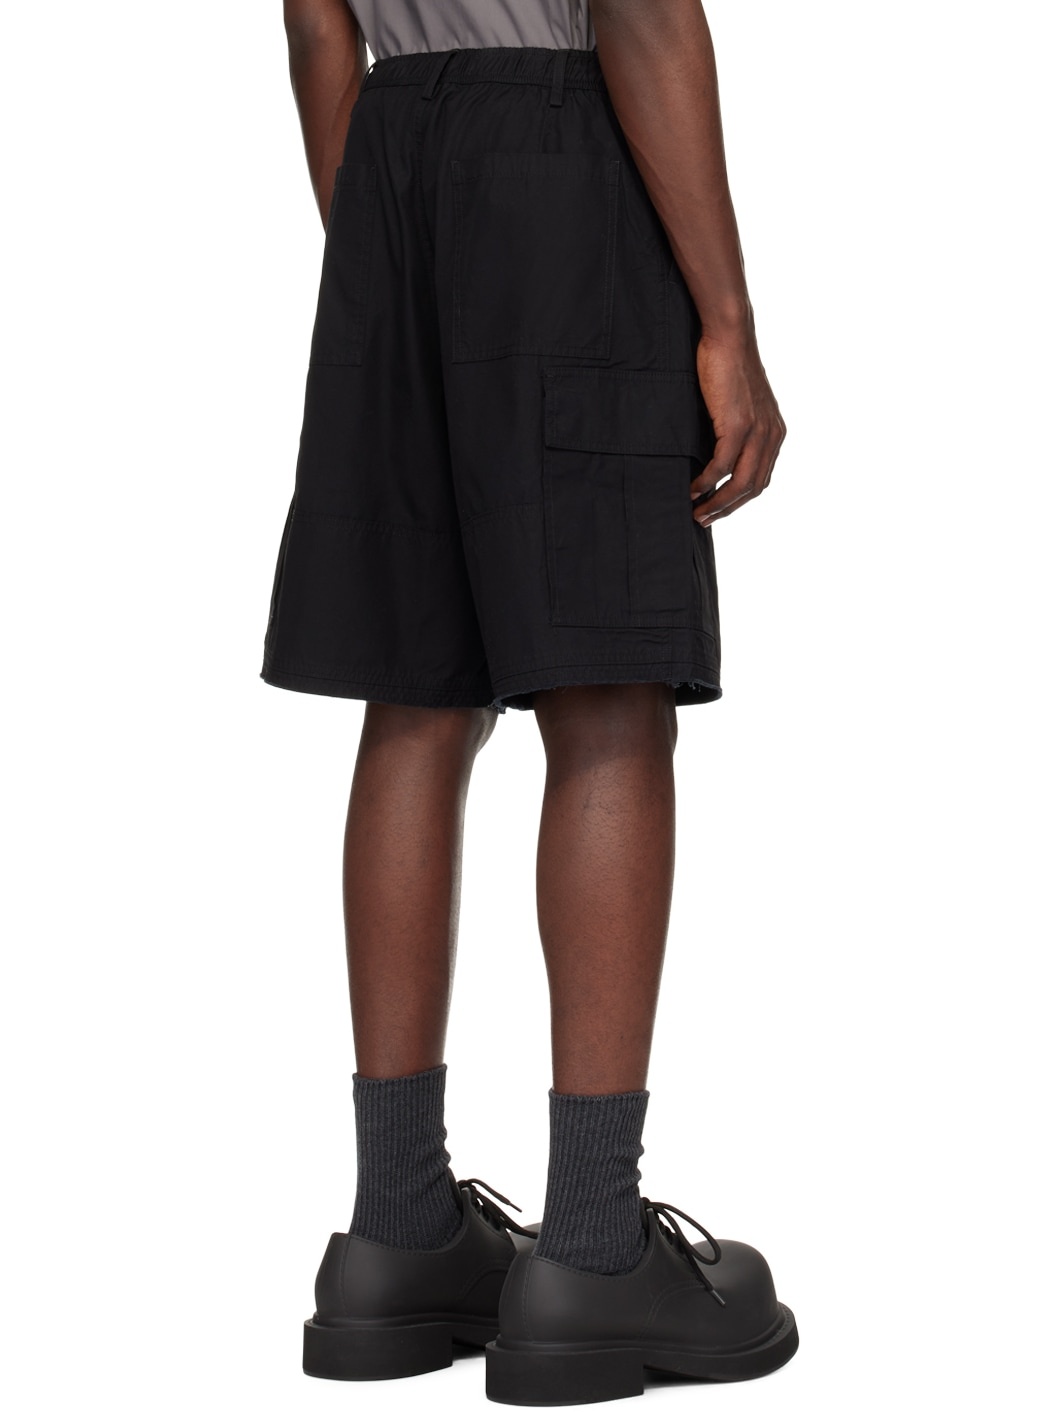 Black Team Shorts - 3